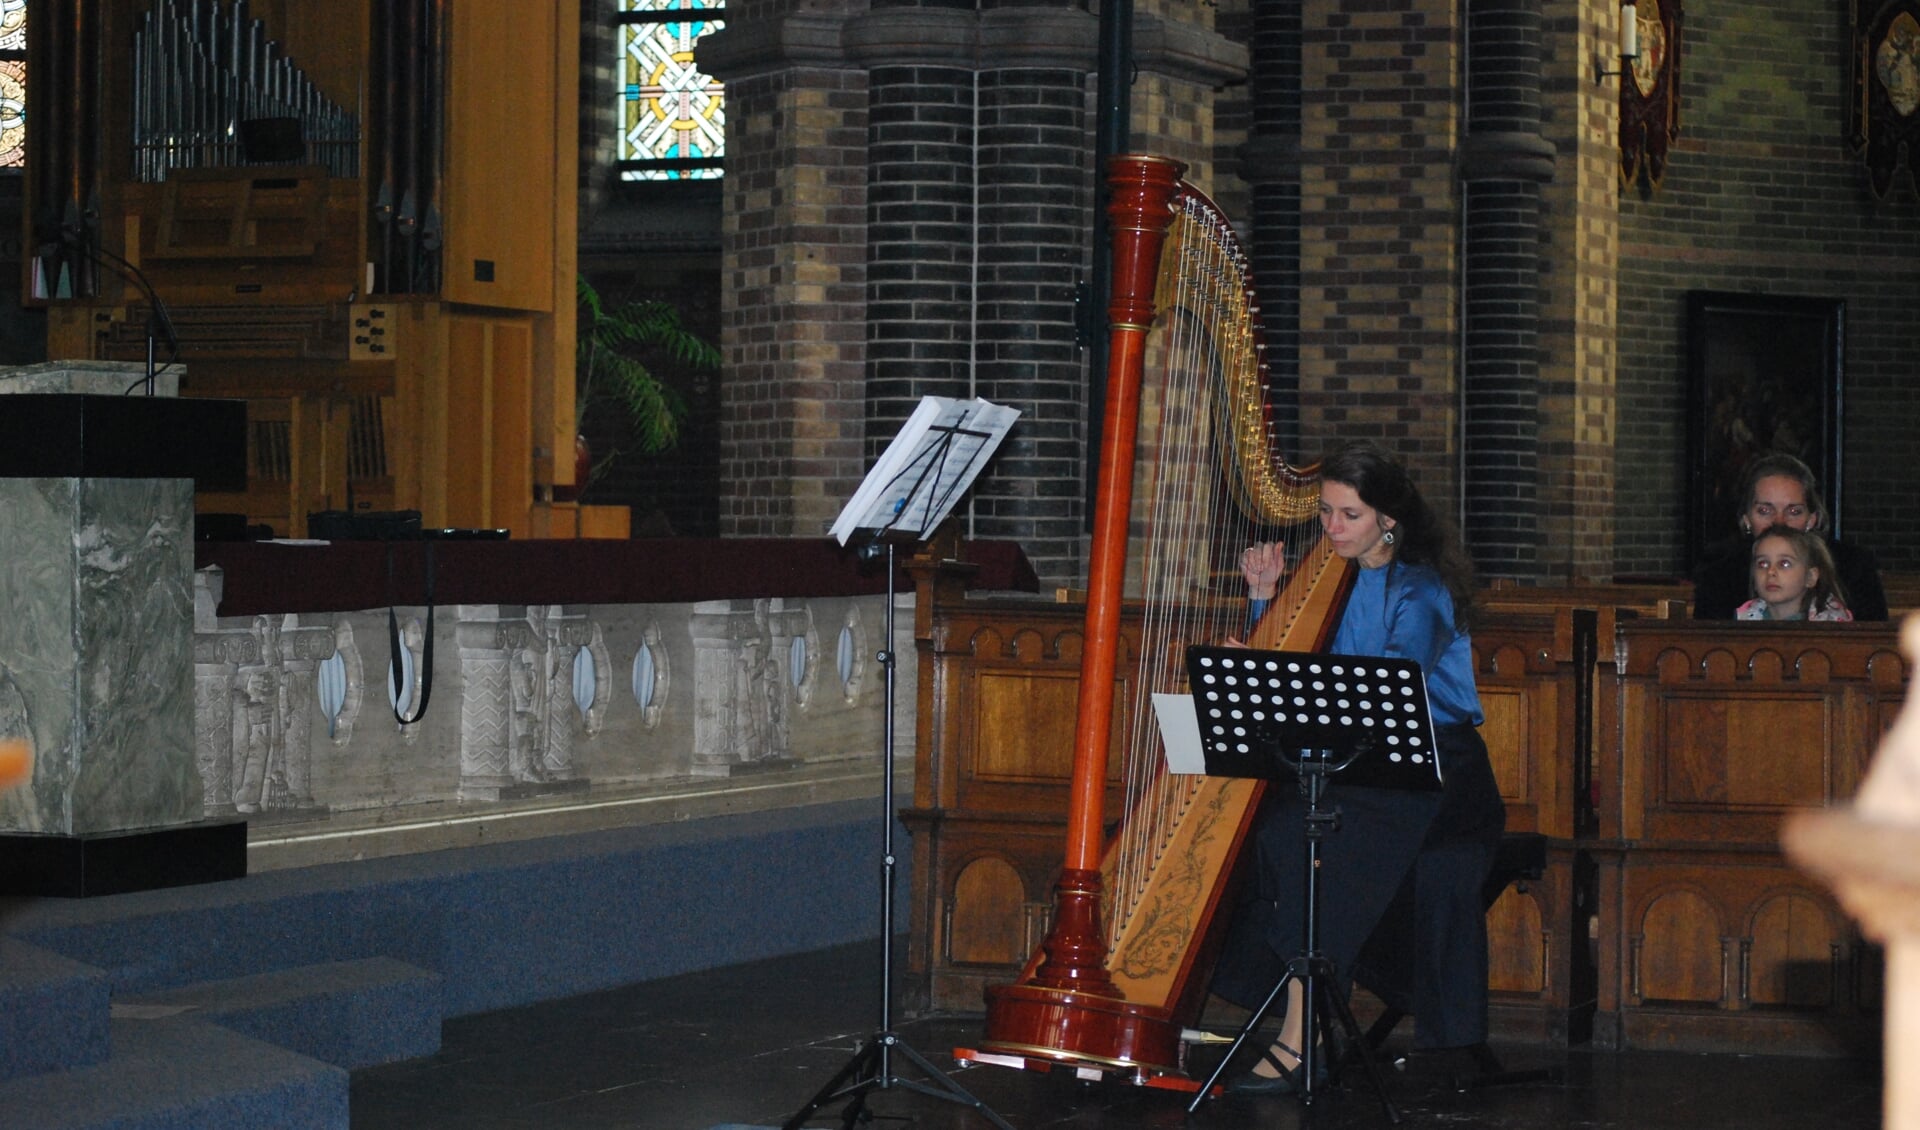 Harpiste Anne van Buul in de Brigidakerk. (Foto's: Corinna Romanesco)